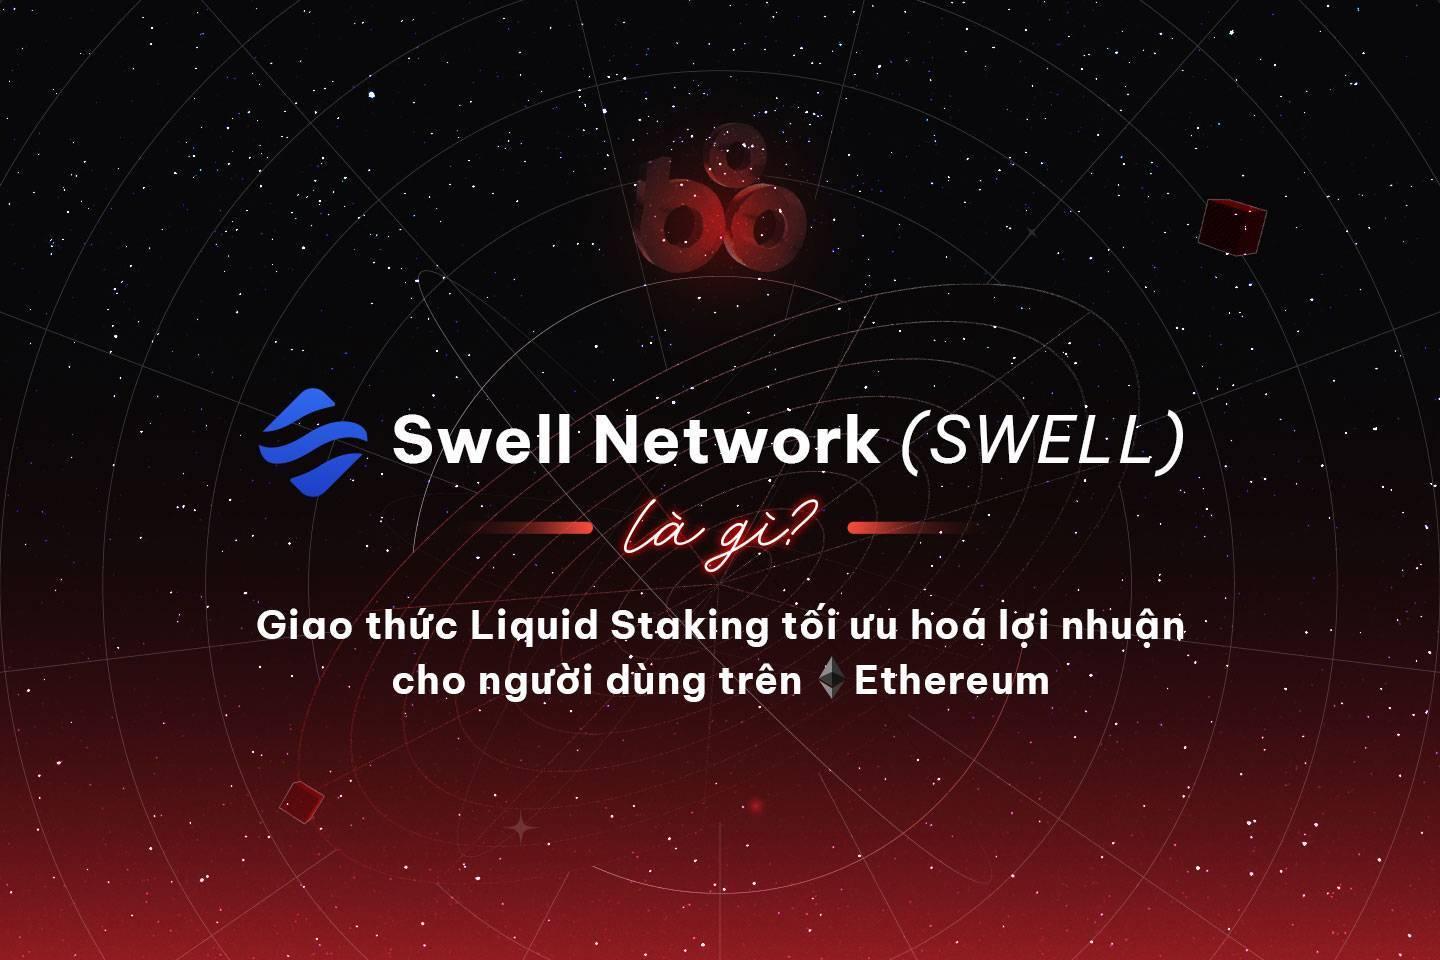 swell-network-swell-la-gi-giao-thuc-liquid-staking-toi-uu-hoa-loi-nhuan-cho-nguoi-dung-tren-ethereum